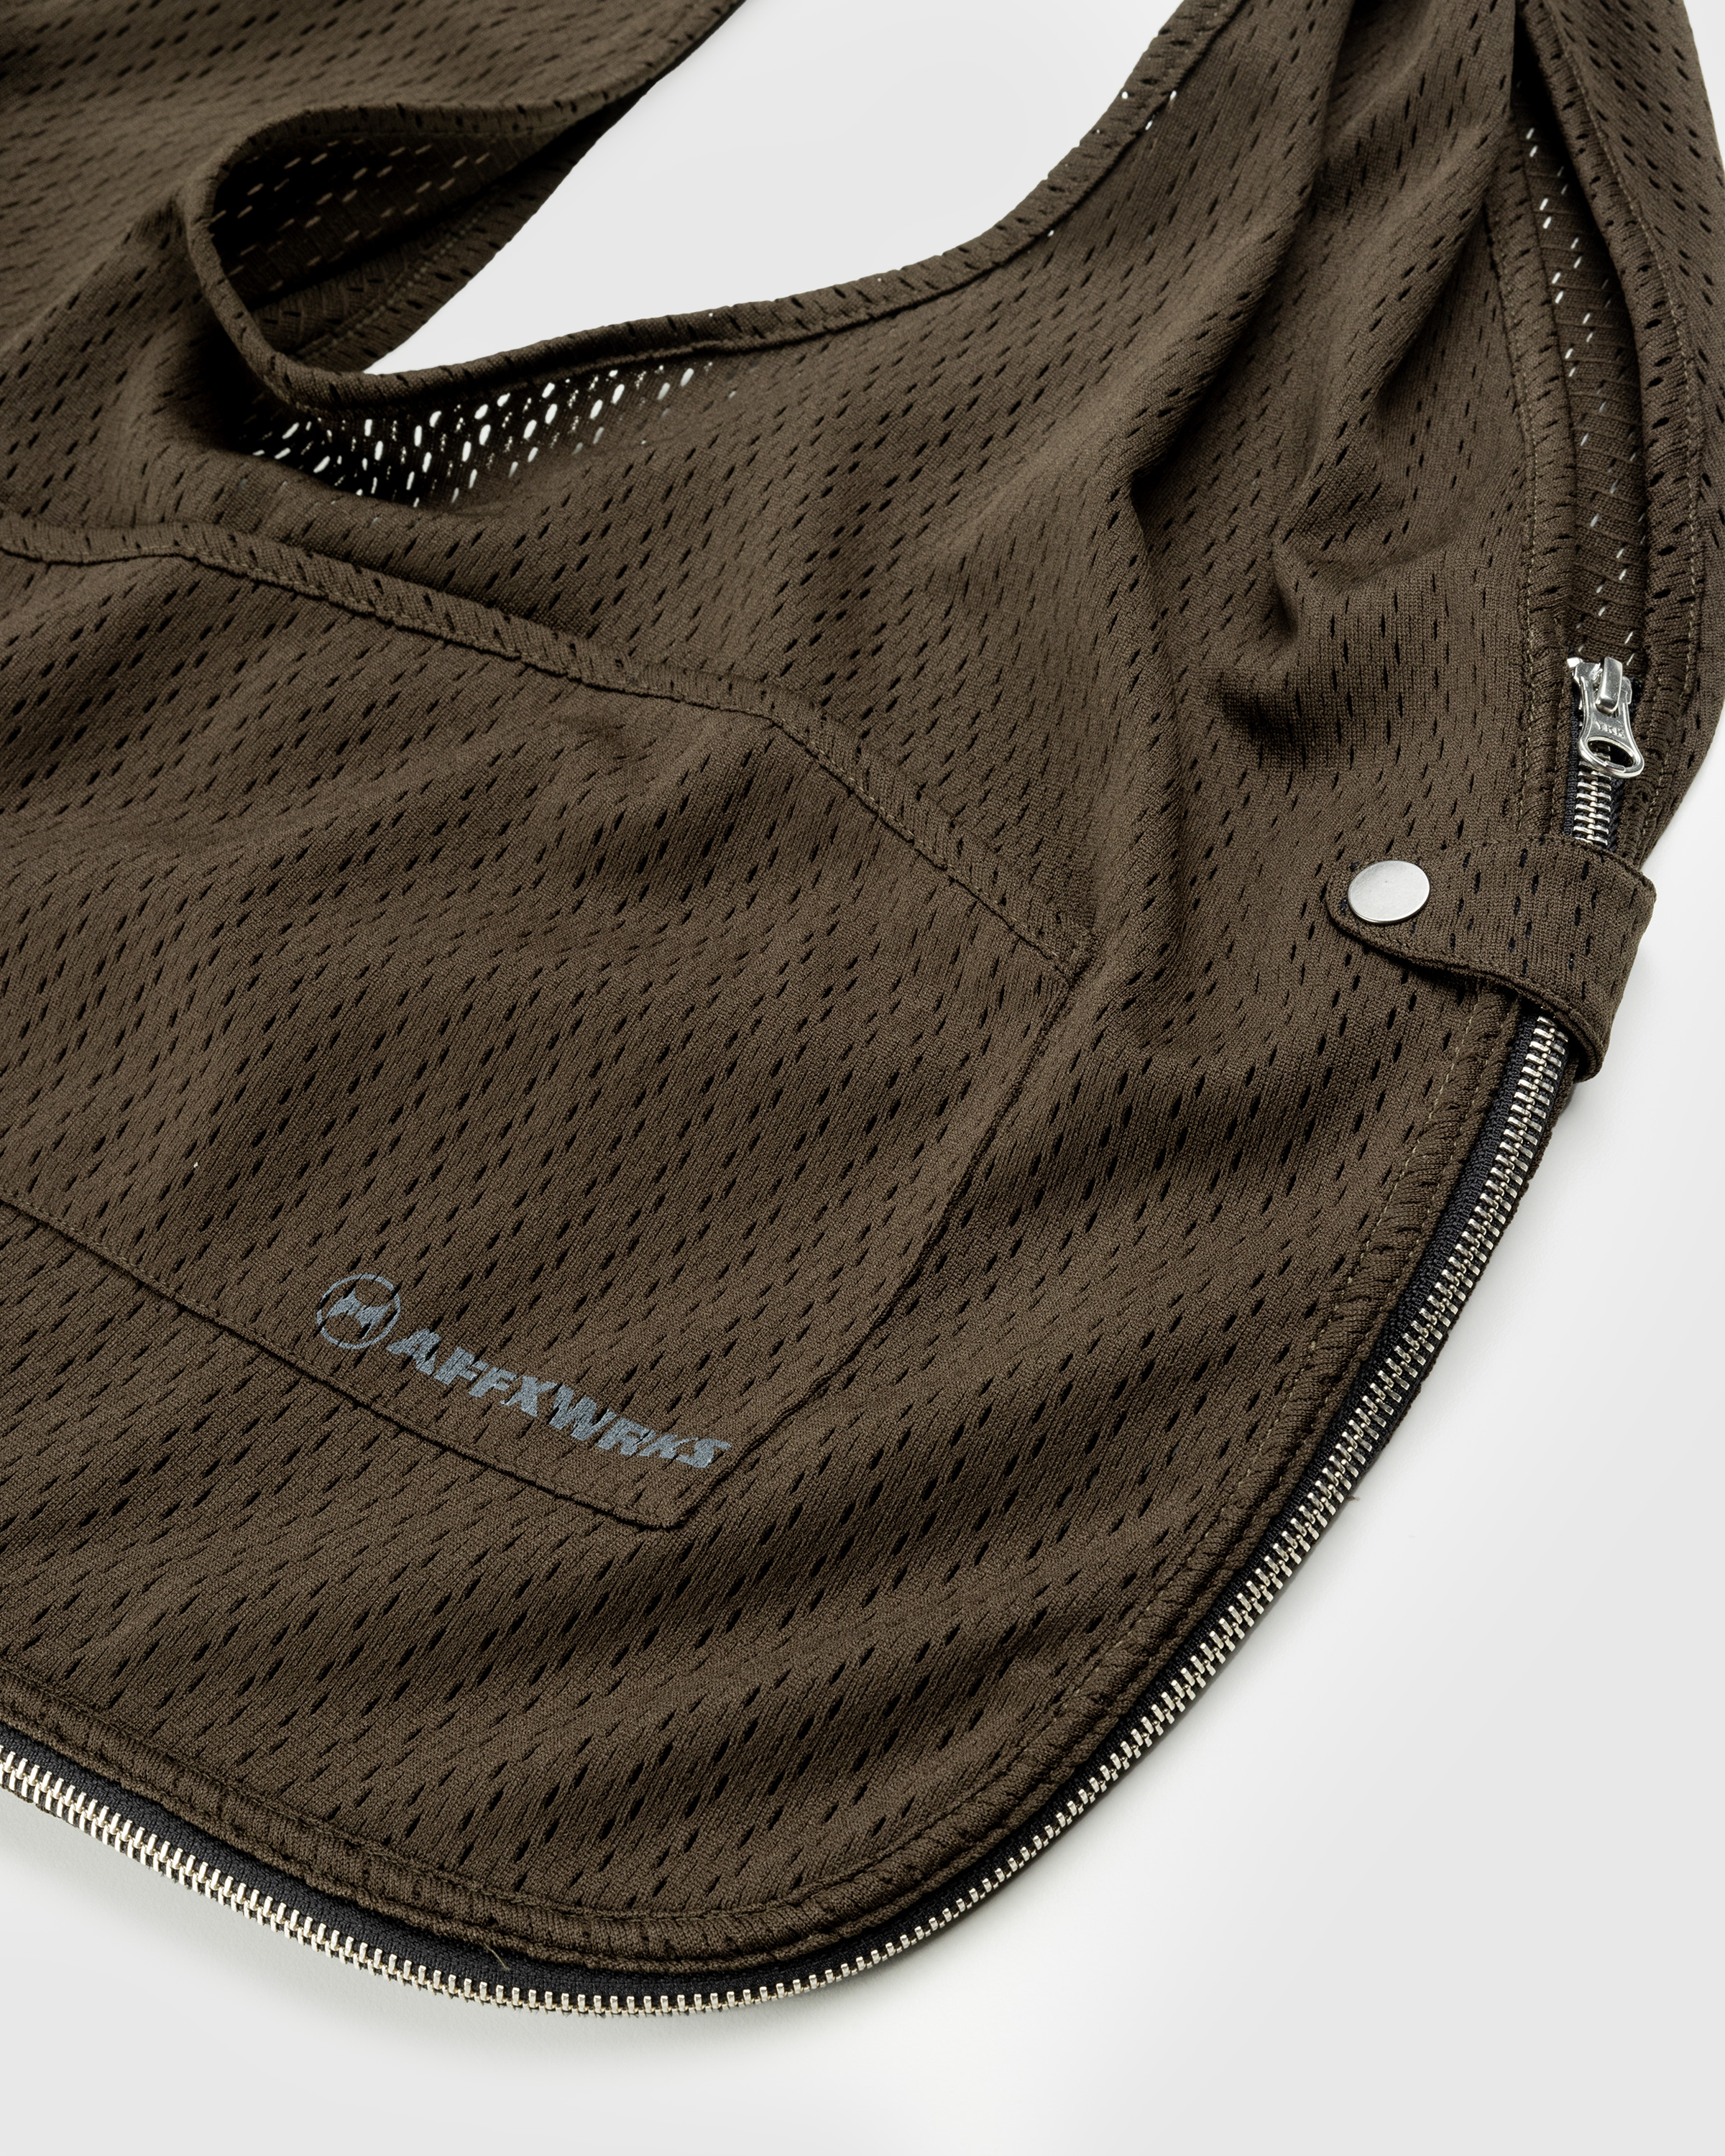 AFFXWRKS – Bag Vest Olive Drab - Vests - Green - Image 5